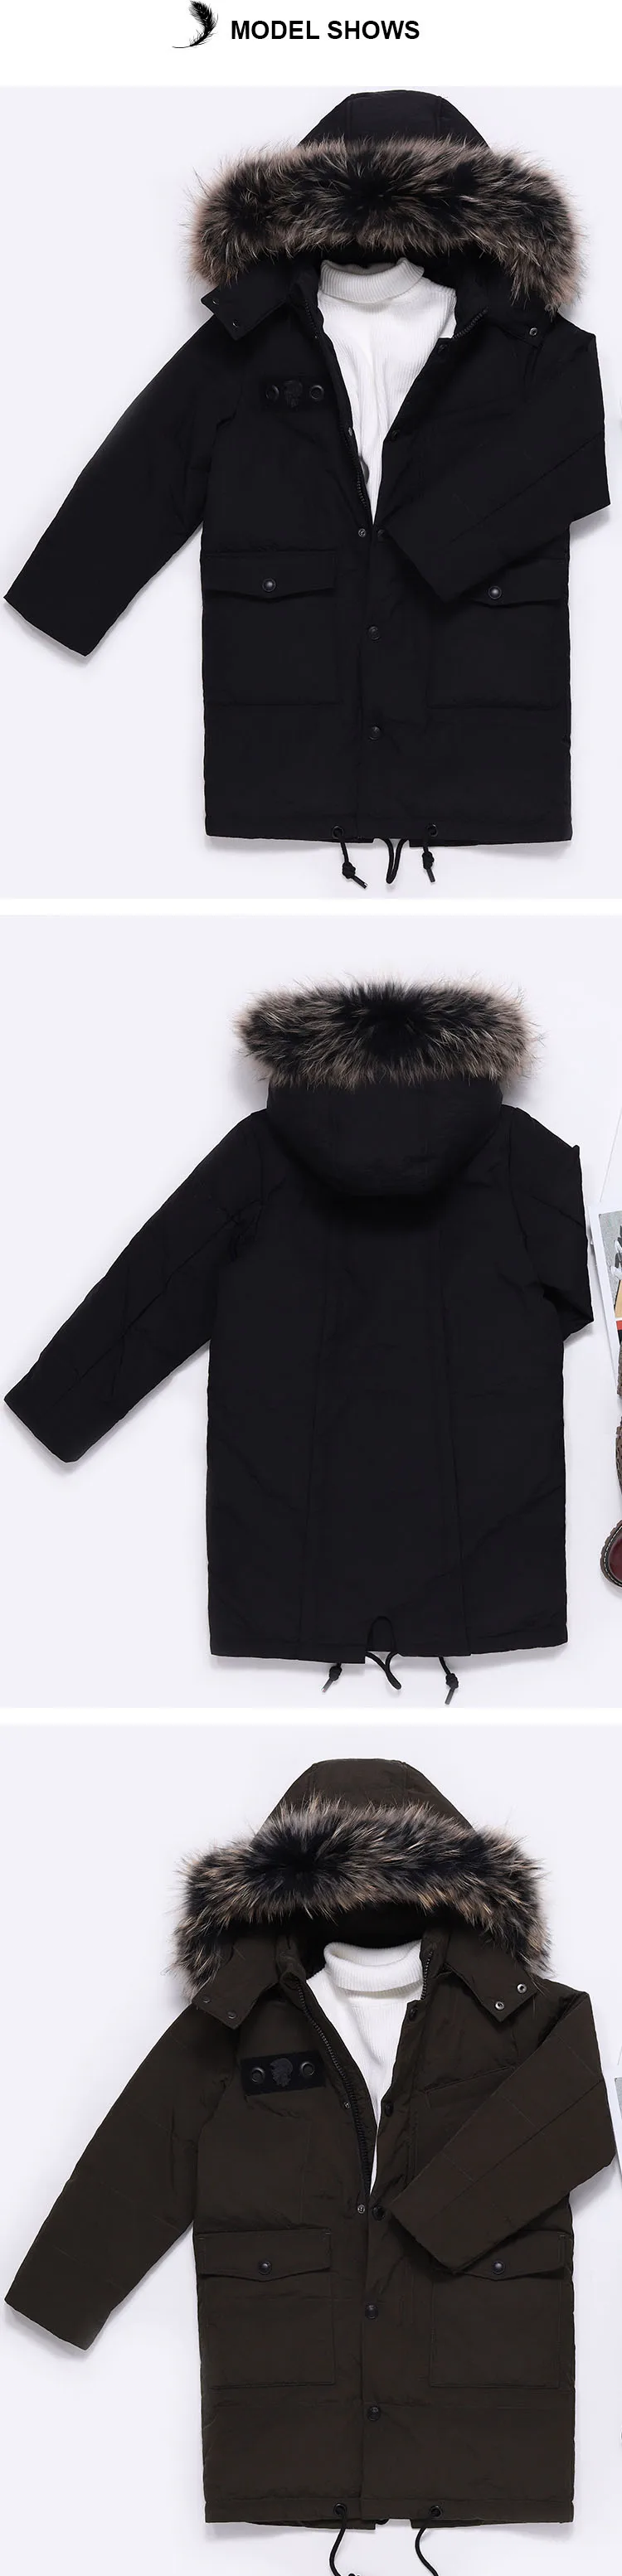 Bilemi/стеганое пуховое пальто с капюшоном на весну для снежной погоды; длинное черное стеганое водонепроницаемое пуховое пальто с меховым капюшоном для мальчиков